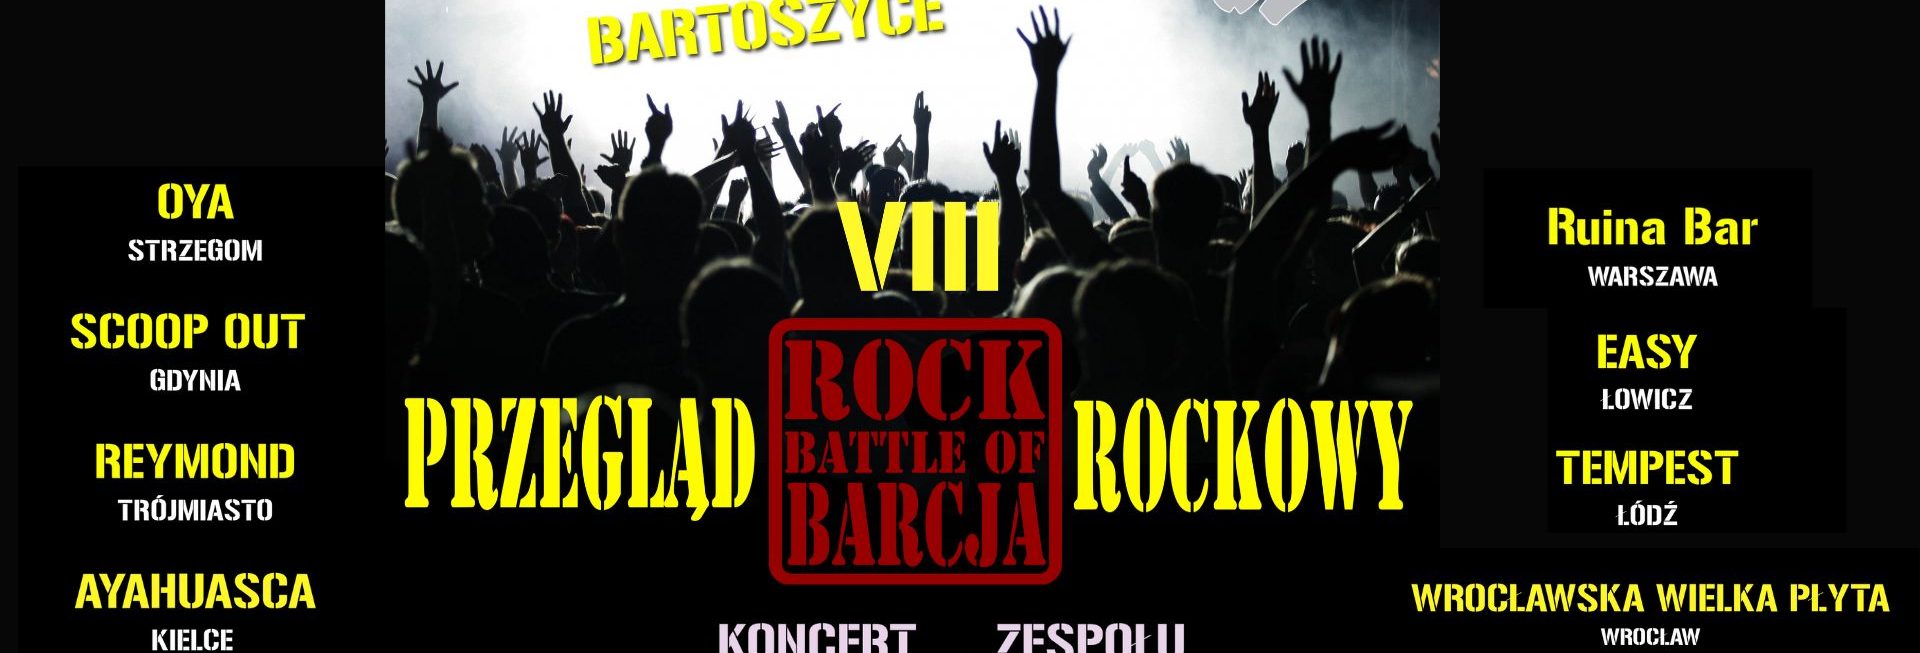 Plakat zapraszający do Bartoszyc na 8. edycję Ogólnopolskiego Przeglądu Rockowego - "Rock Battle of Barcja" Bartoszyce 2022.